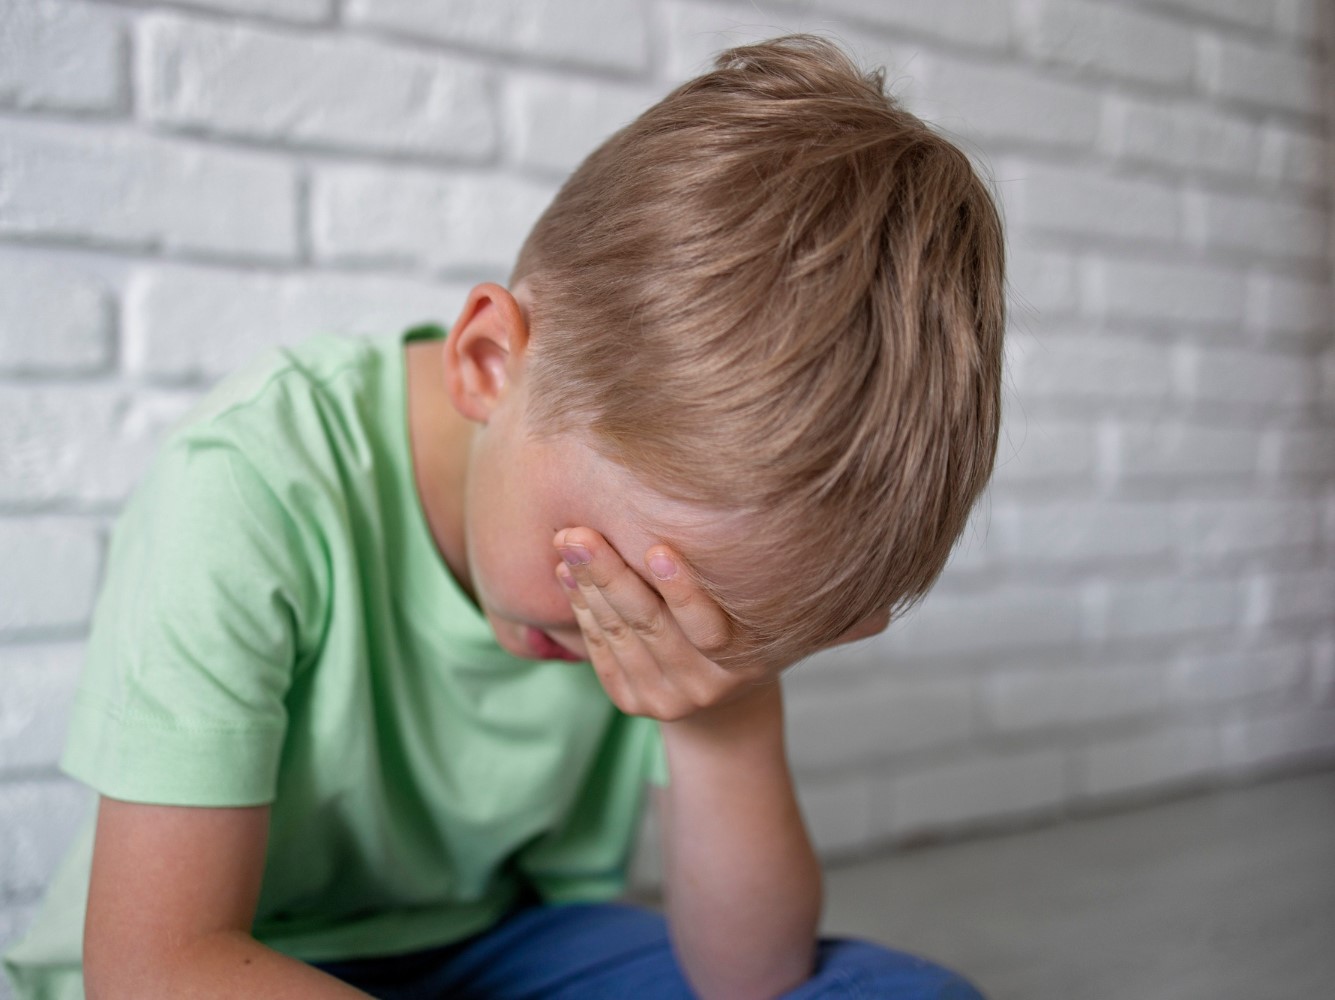 Szorongó, vagy viselkedési problémás a gyerek? - Legtöbbször a szülőknél kell keresni az okokat